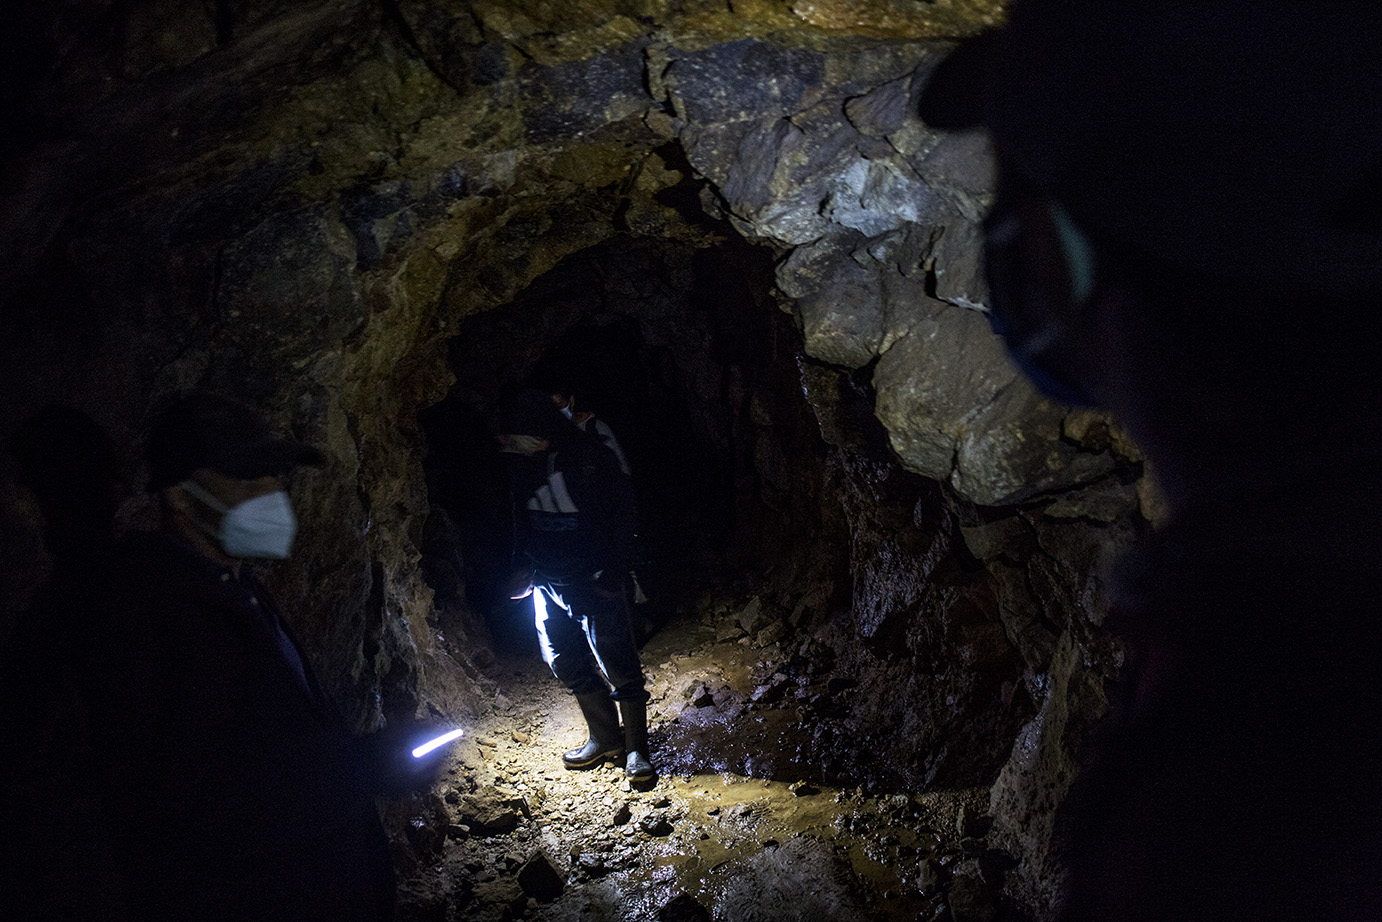 Uno de los tantos túneles cavados, según la gente del lugar, en el época de la colonia española demuestra que la explotación minera tiene orígenes lejanas en la historia de la región. Simone Dalmasso